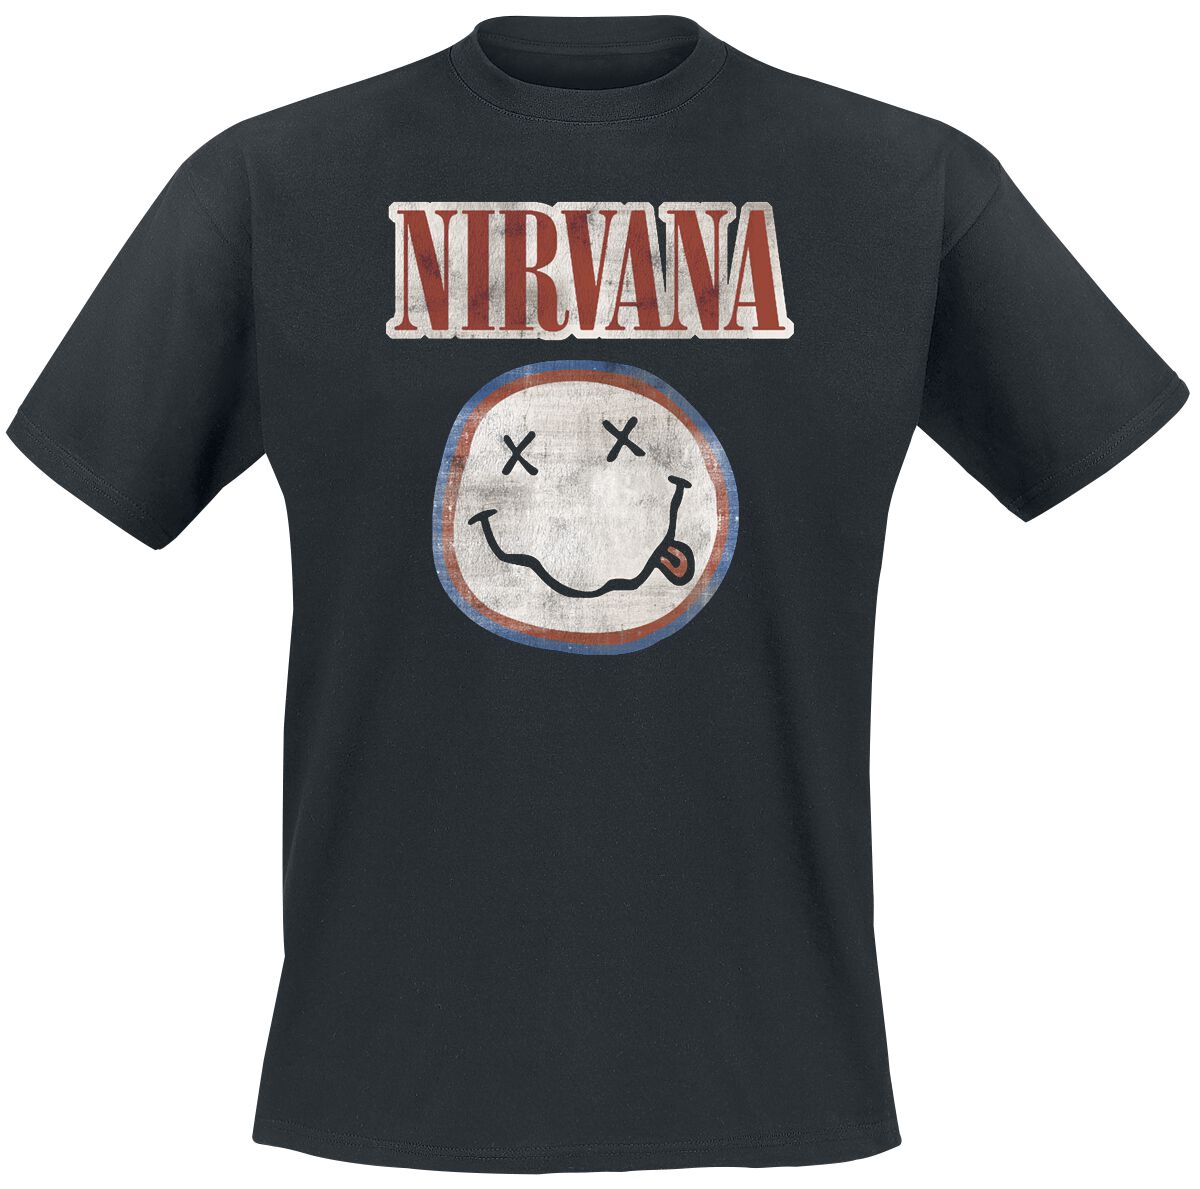 Nirvana T-Shirt - Distressed Logo - S bis XXL - für Männer - Größe M - schwarz  - Lizenziertes Merchandise!